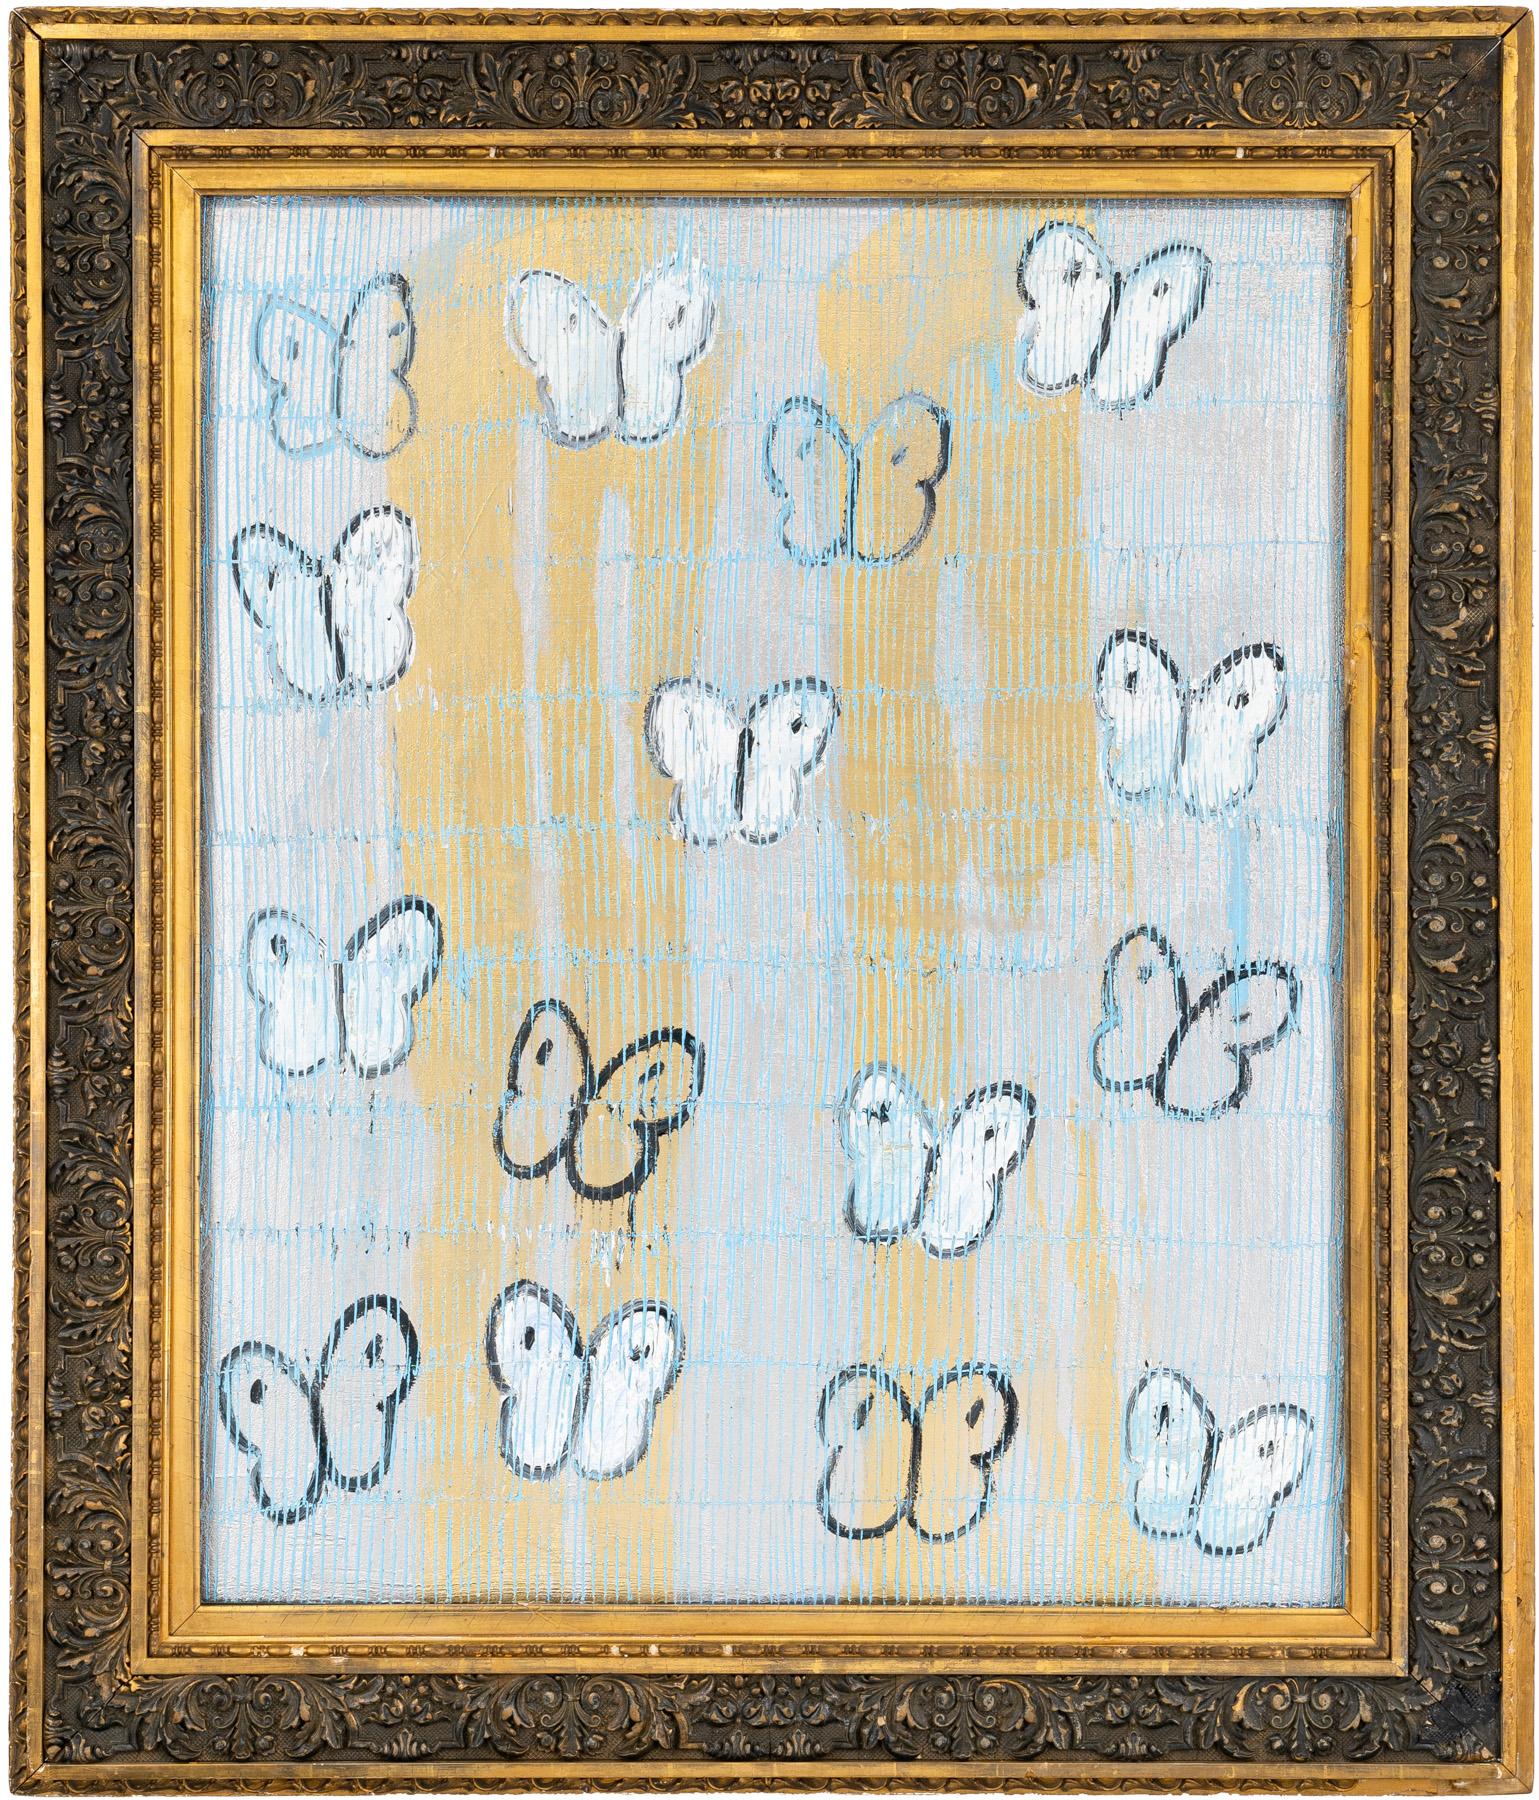 Hunt Slonem "Flatteraufstieg in Blau" Schmetterlinge
Schwarz umrandete weiße und hellblaue Schmetterlinge auf einem gold- und silbergeätzten Hintergrund in einem antiken Rahmen.

Ungerahmt: 39,5 x 32,5 Zoll
Gerahmt: 49 x 42 Zoll
*Gemälde ist gerahmt